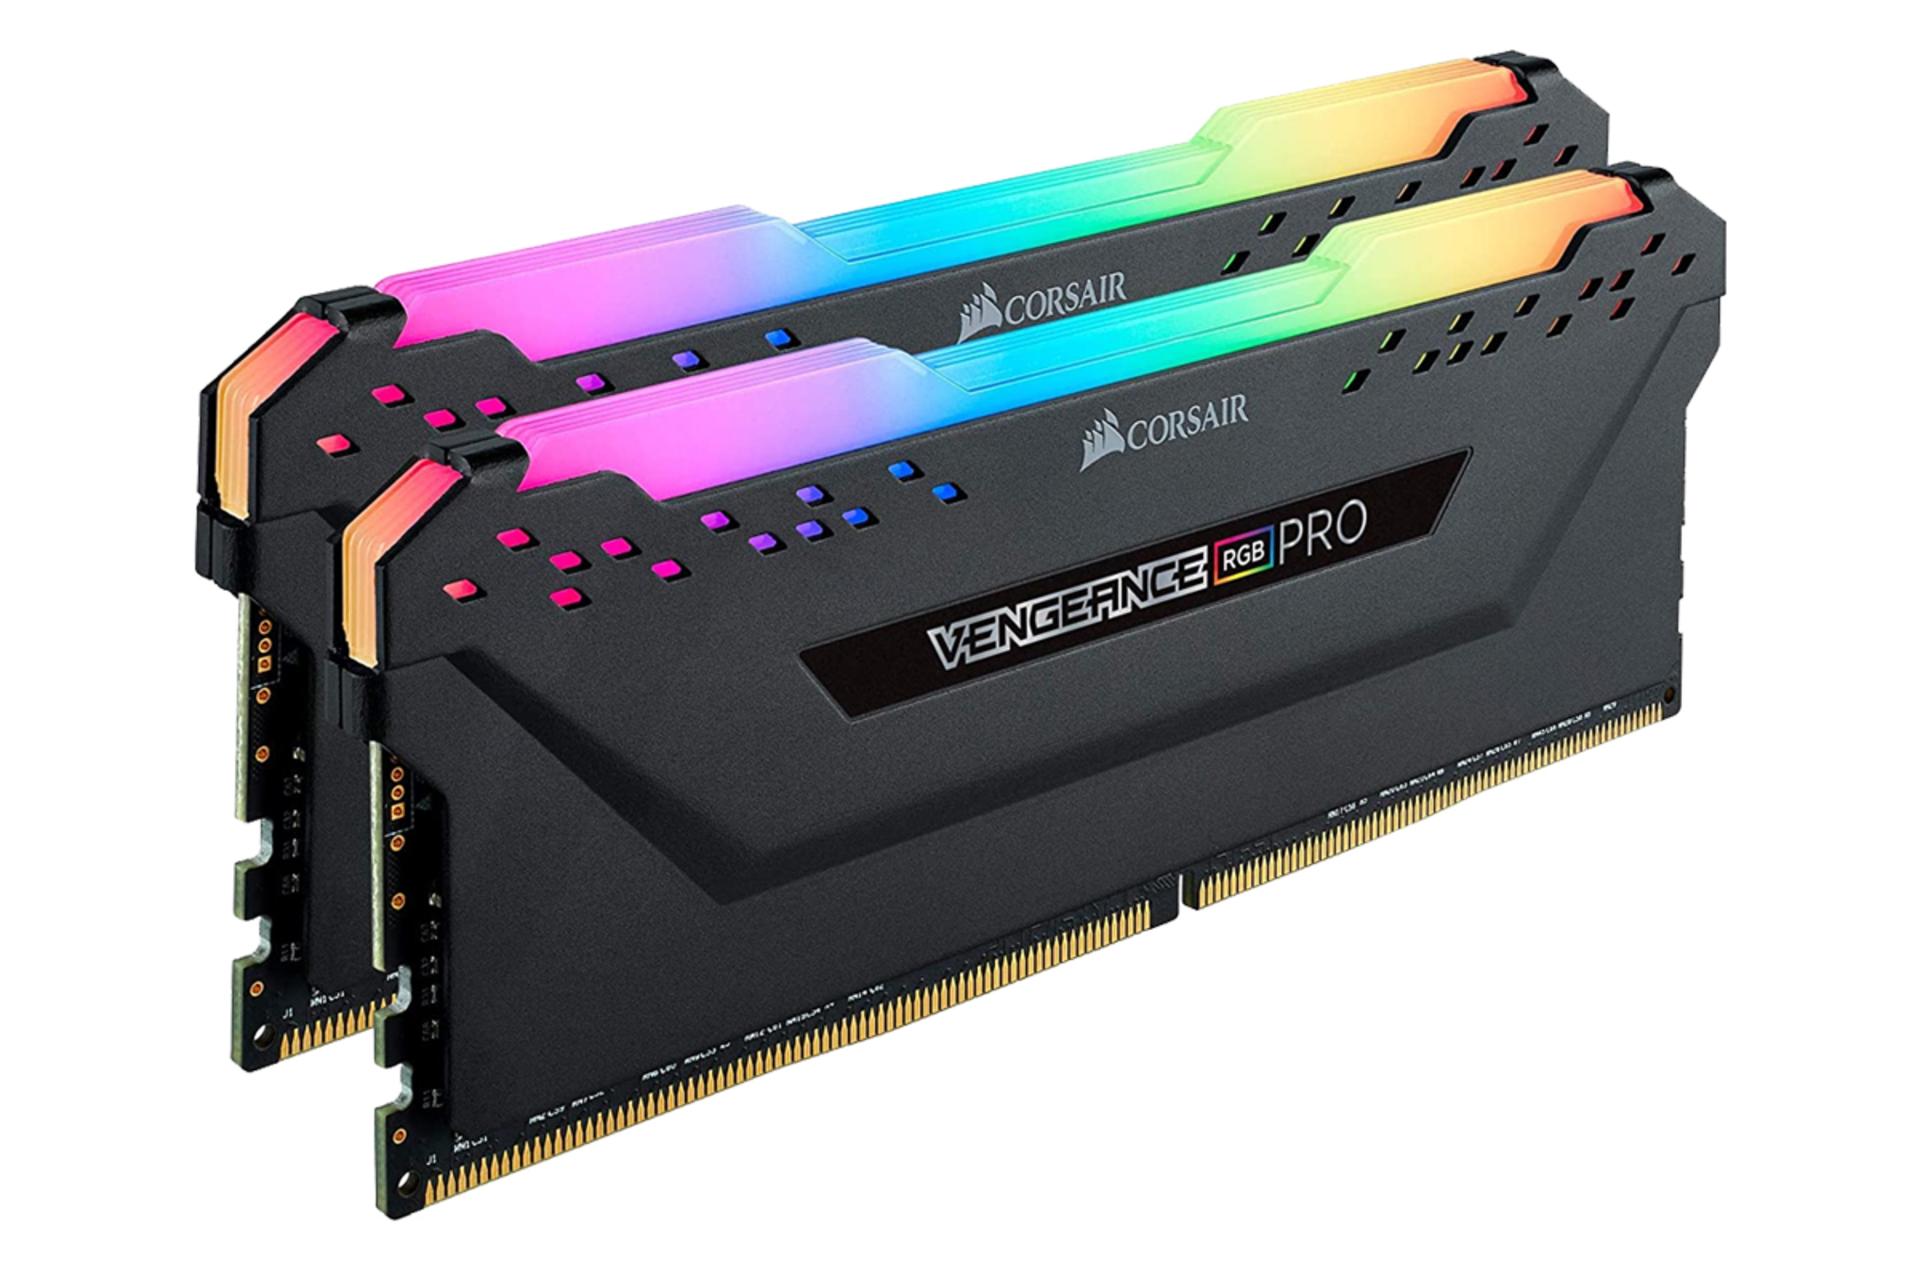 نمای کنار رم کورسیر VENGEANCE RGB PRO ظرفیت 32 گیگابایت (2x16) از نوع DDR4-3600